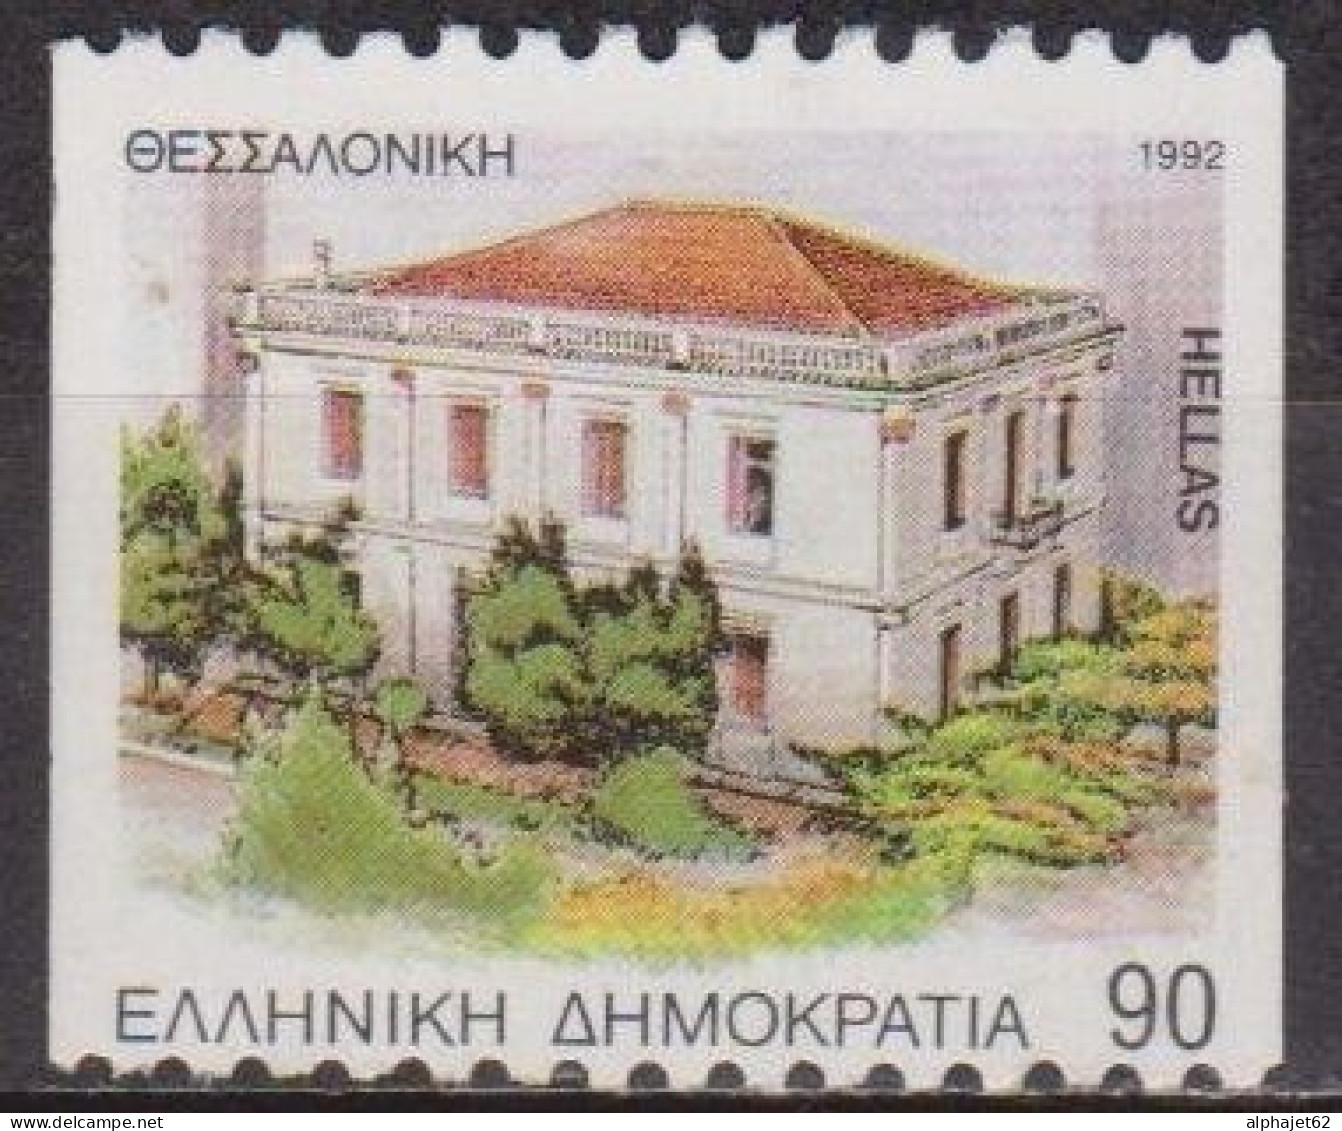 Musée Des Guerres - GRECE - Macédoine - N°  1808 * - 1992 - Oblitérés